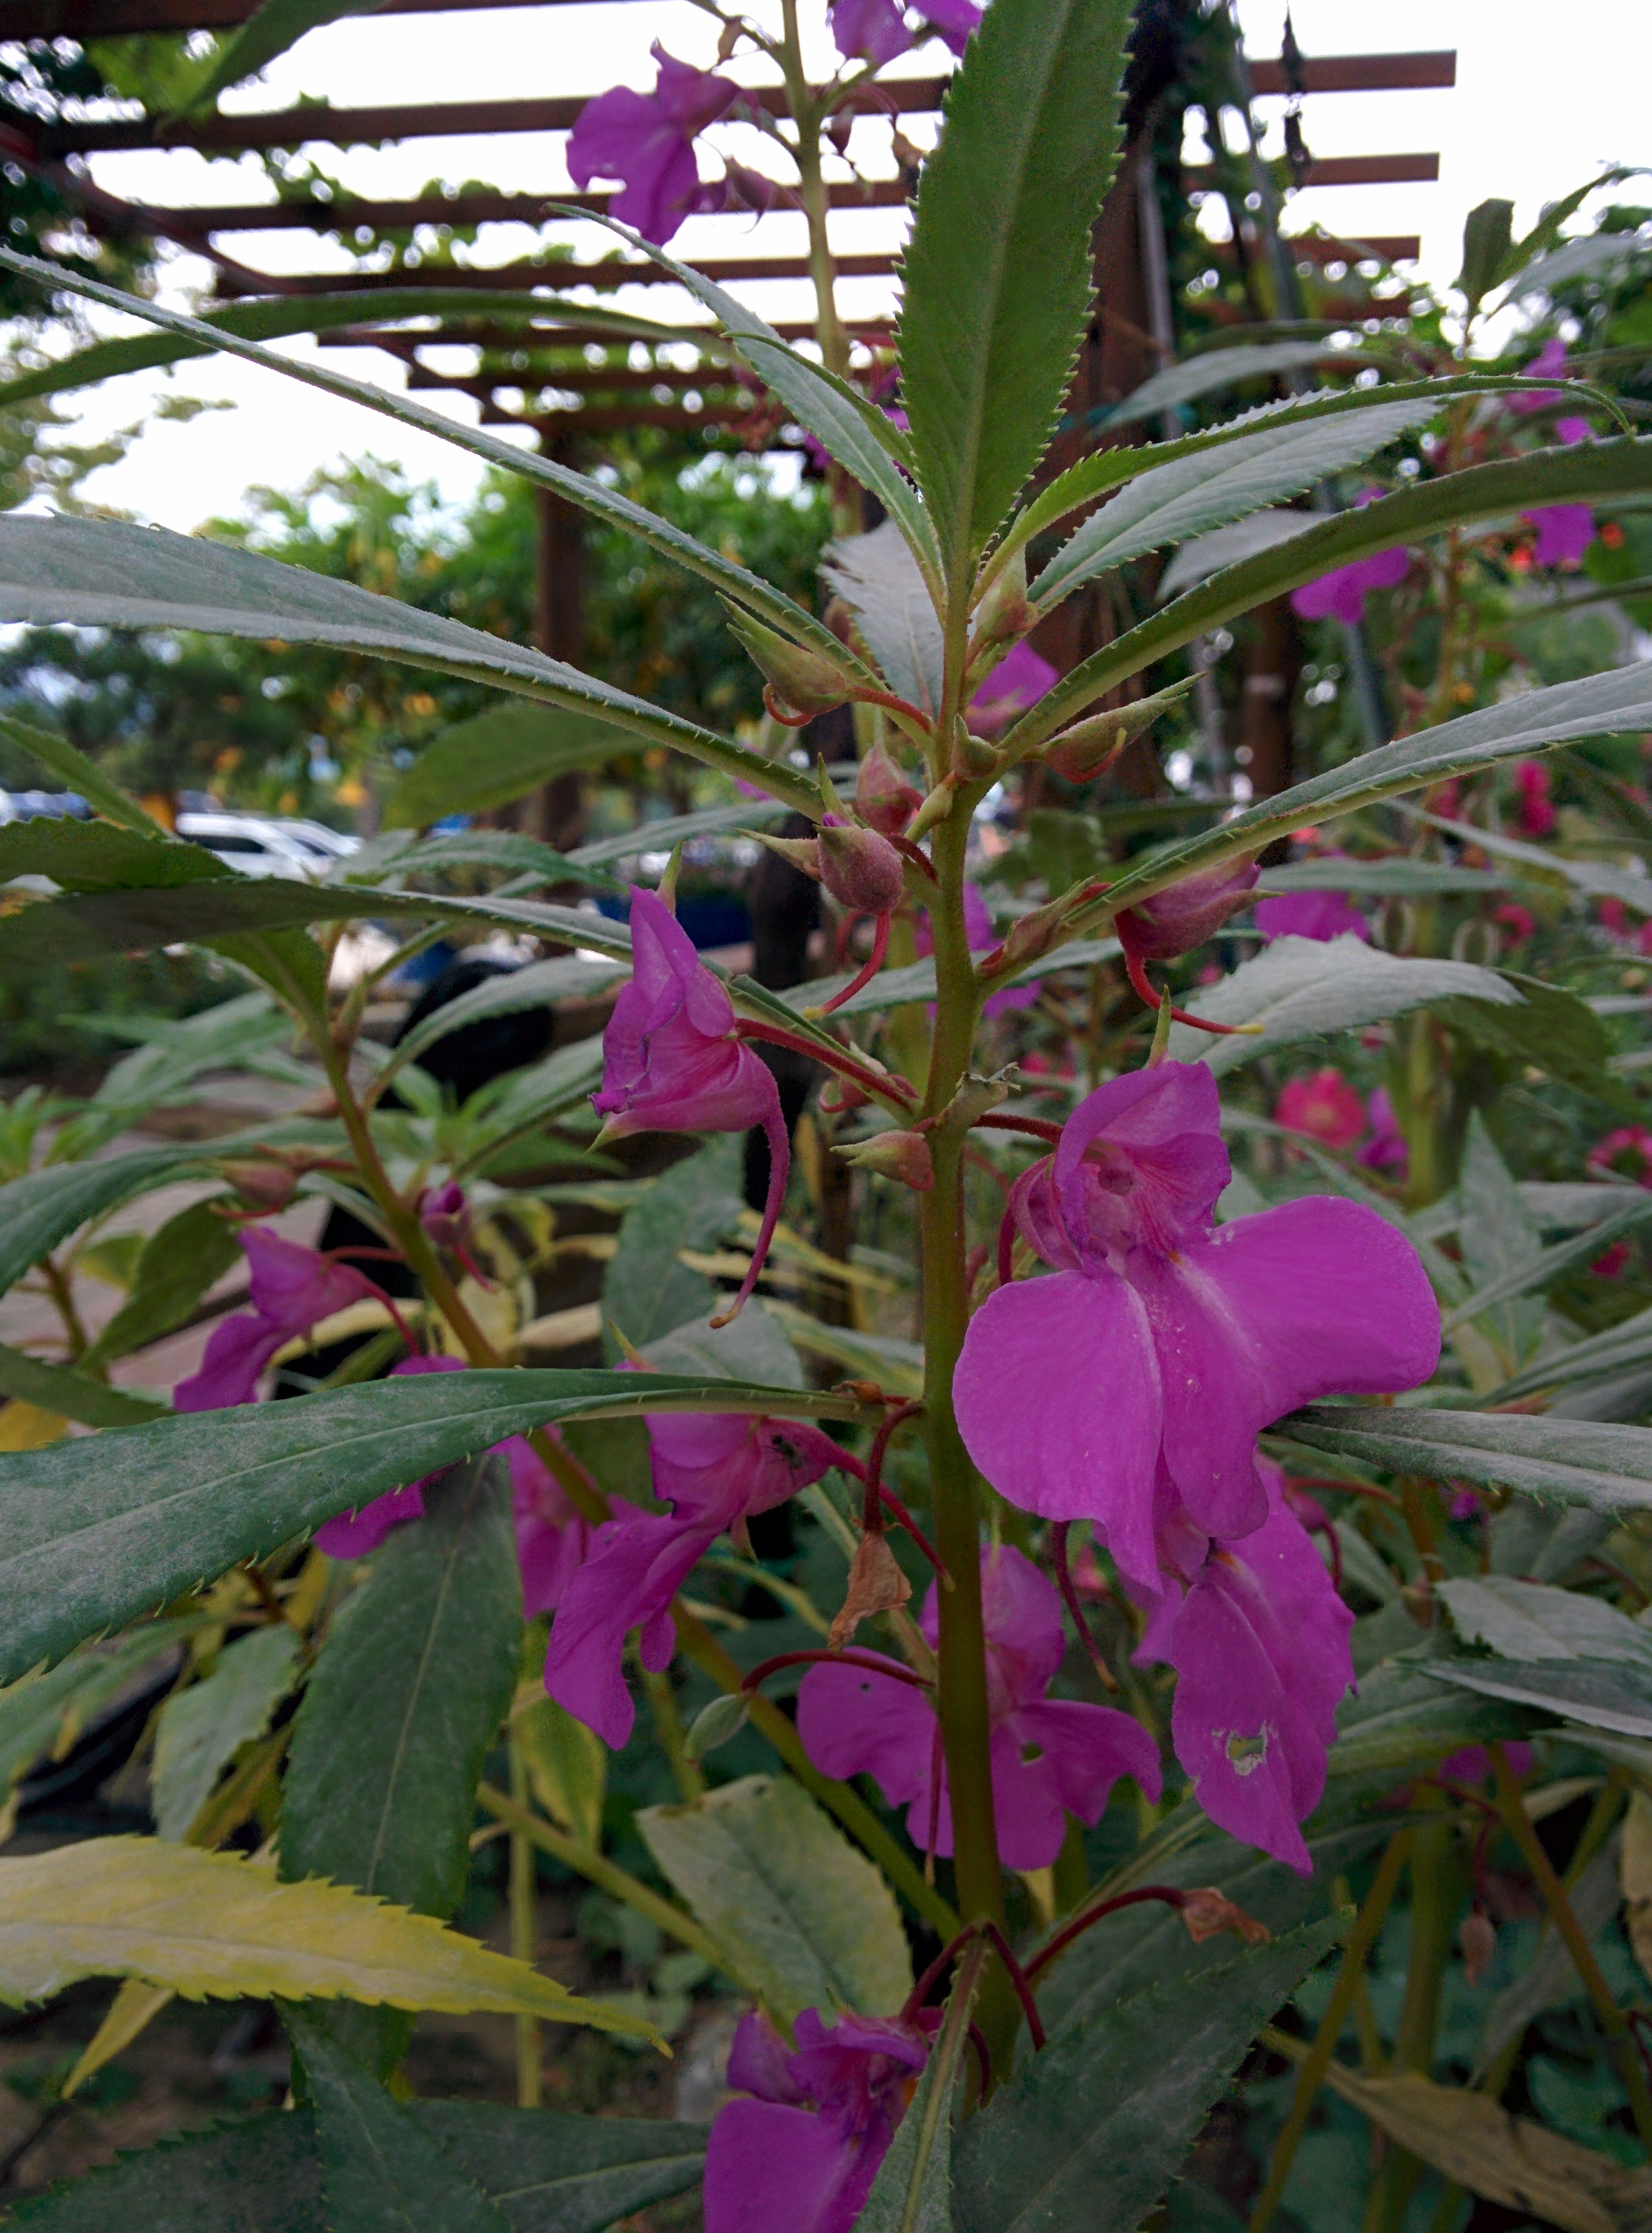 IMG_20150912_162158.jpg 옅은 분홍색 짙은 분홍색 봉선화(봉숭아) 꽃